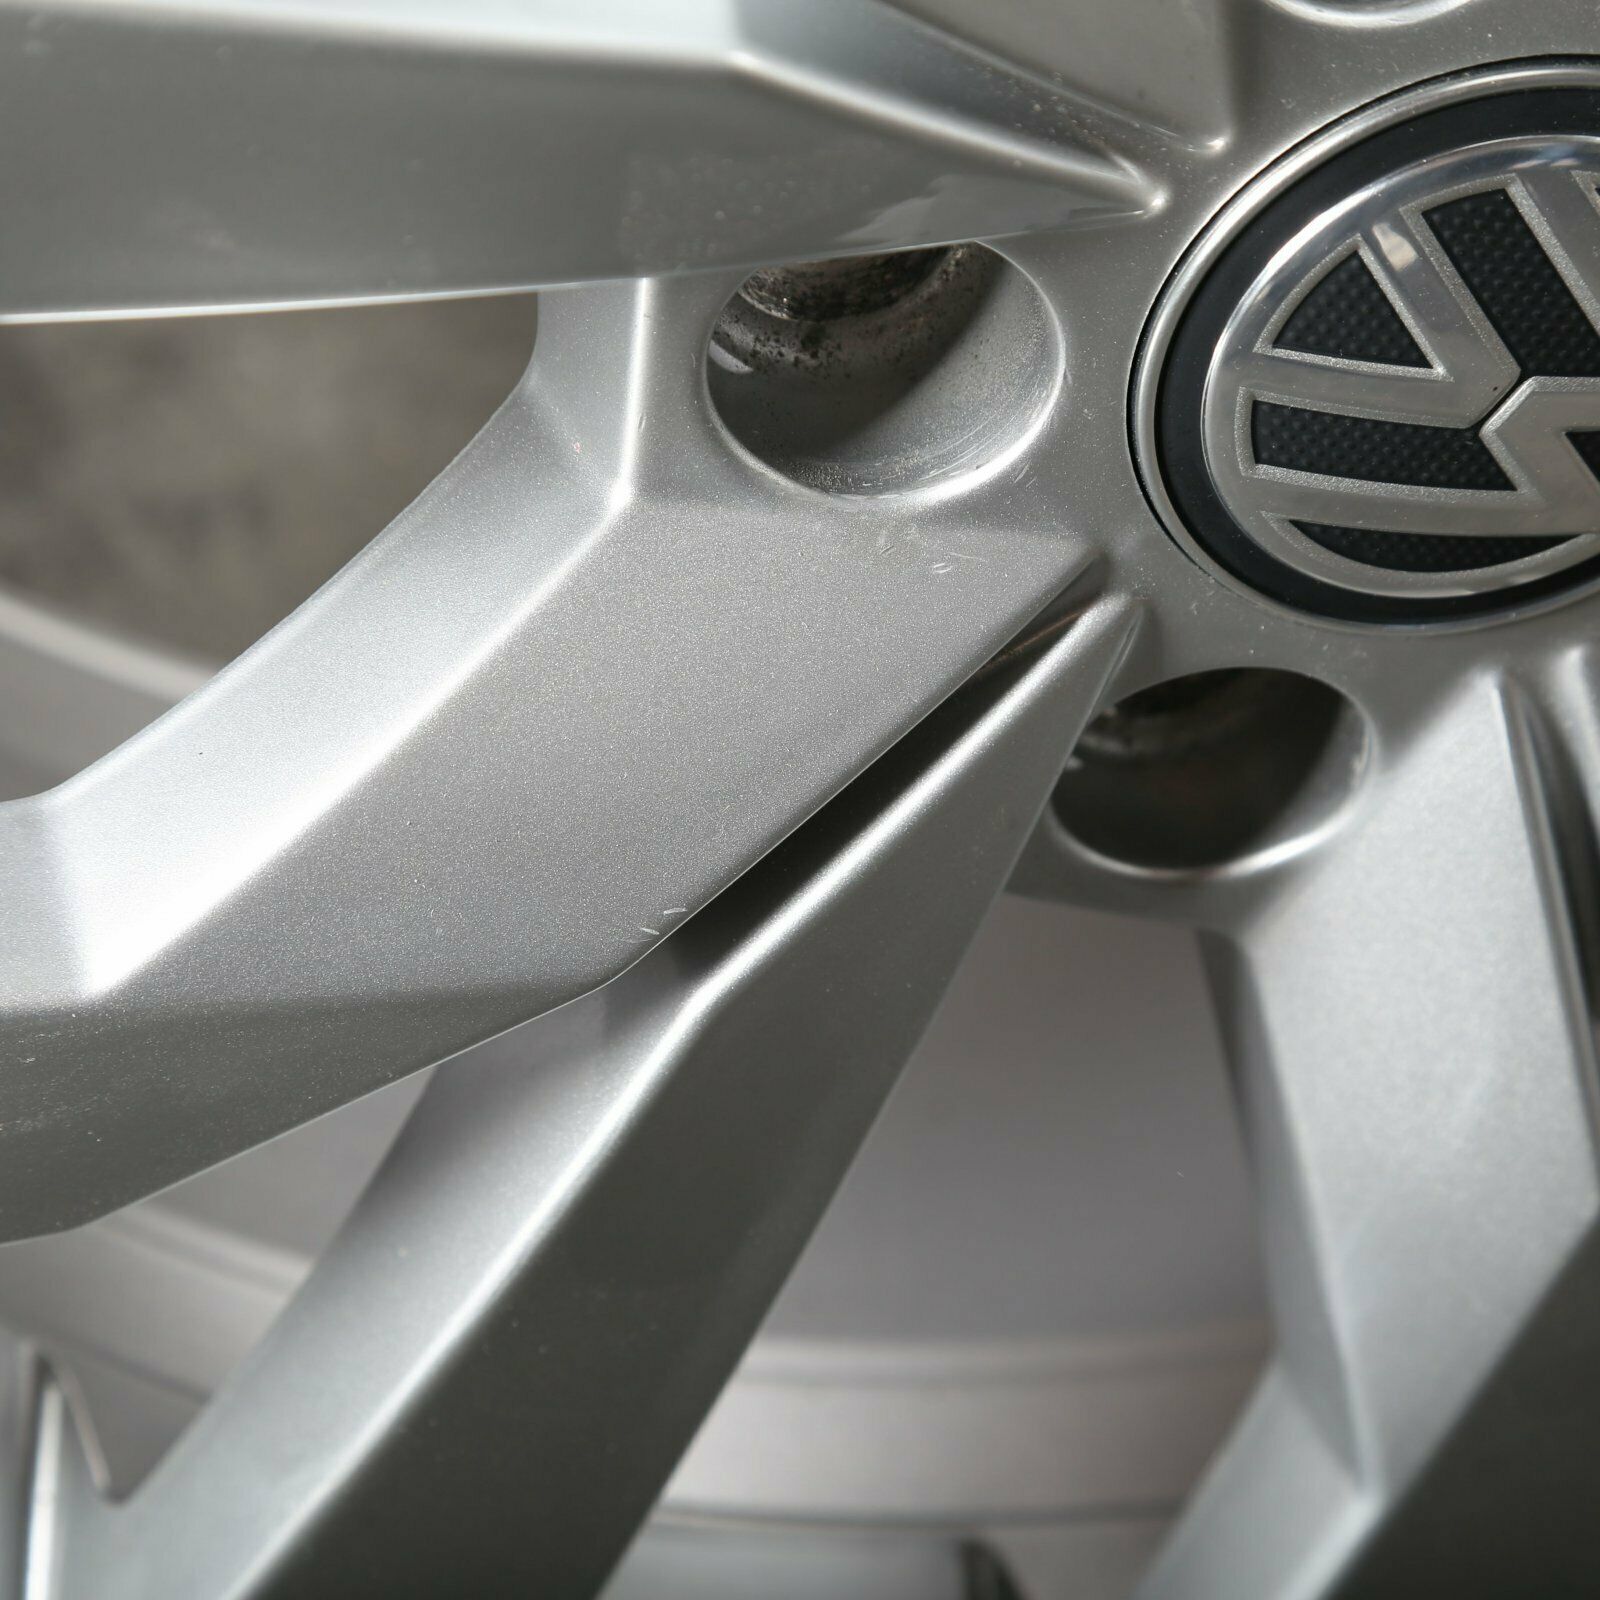 17 inch velg origineel VW Golf VII 7 5G0601025CR Lichtmetalen velg Karlskoga